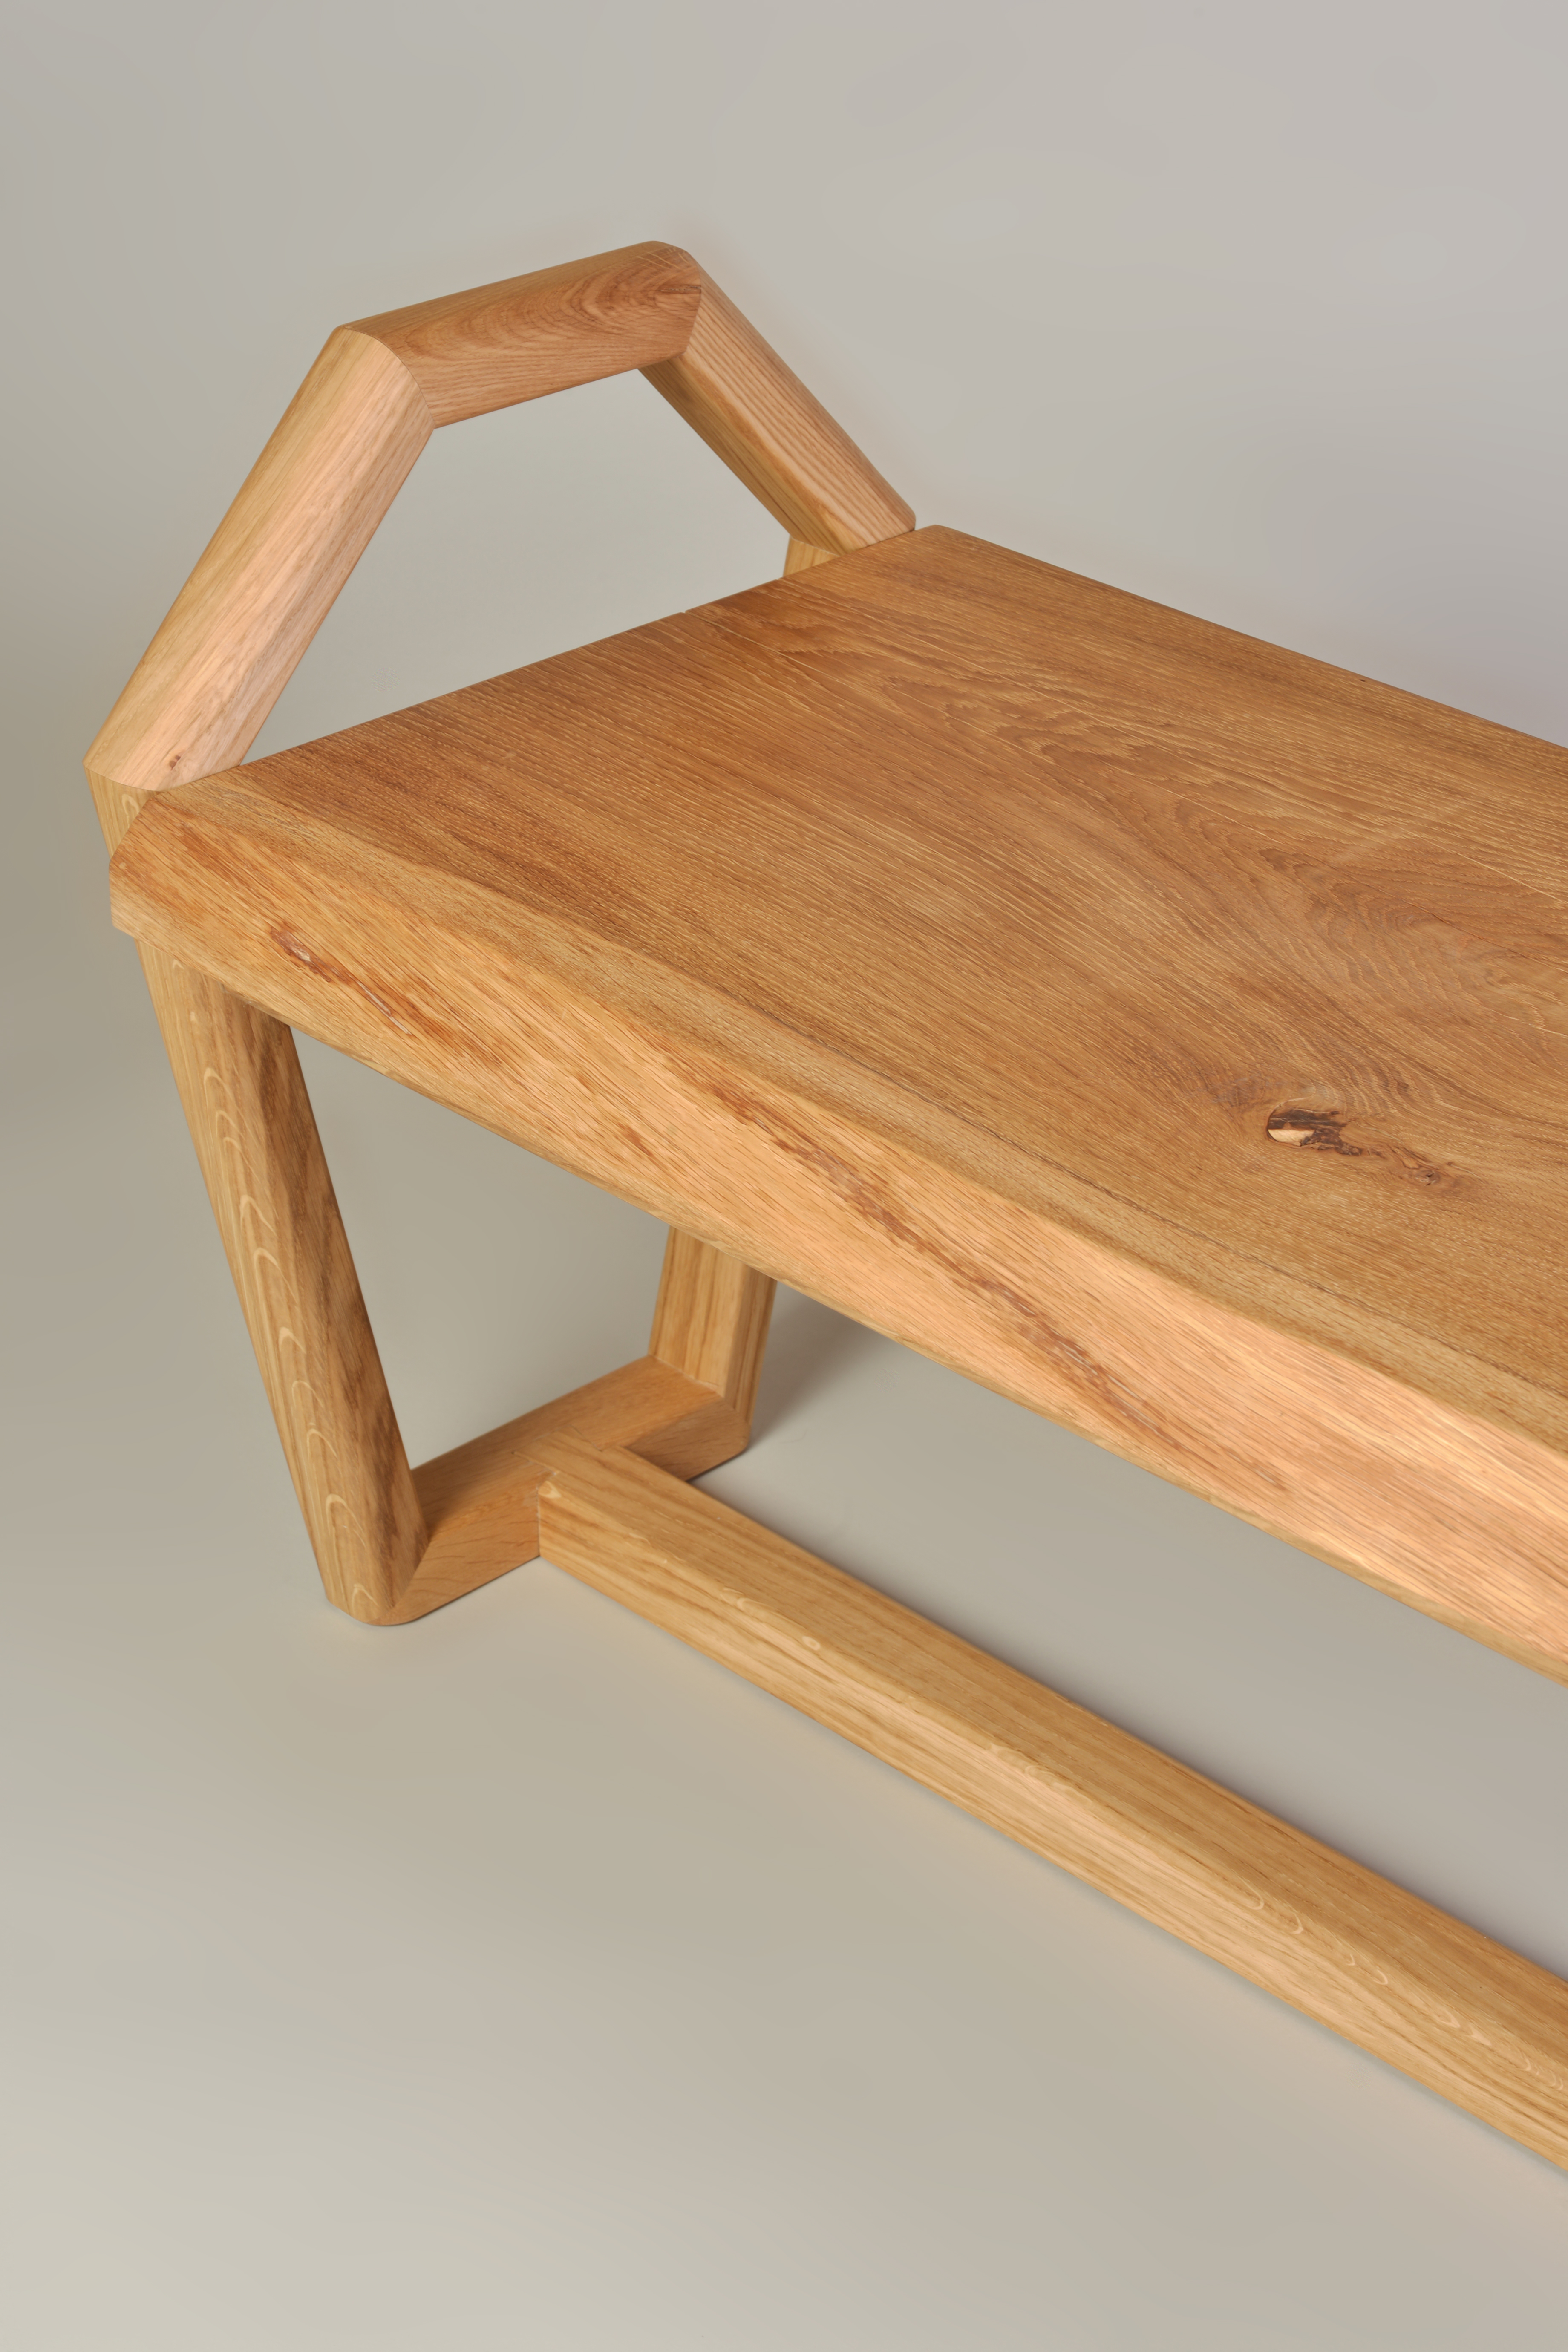 Designer bench made of natural wood